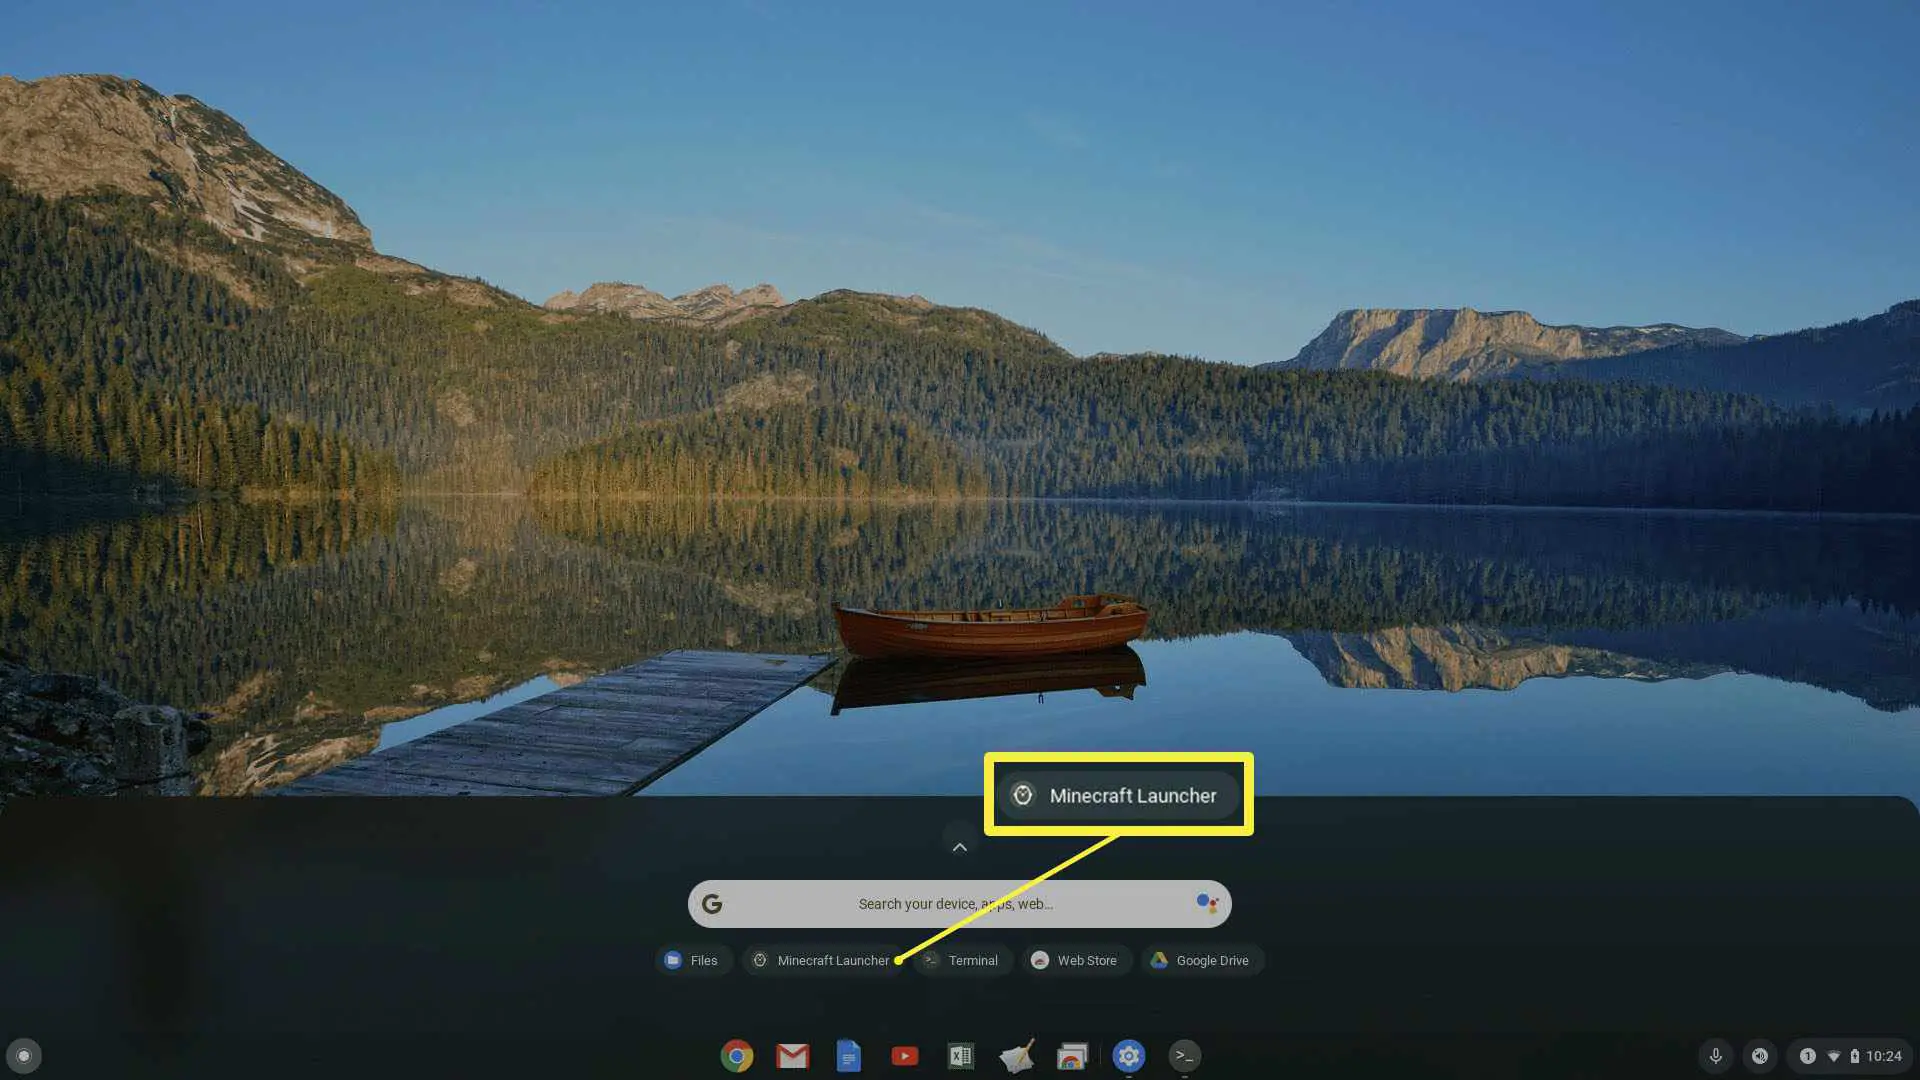 Captura de tela do Minecraft Launcher no Chromebook.